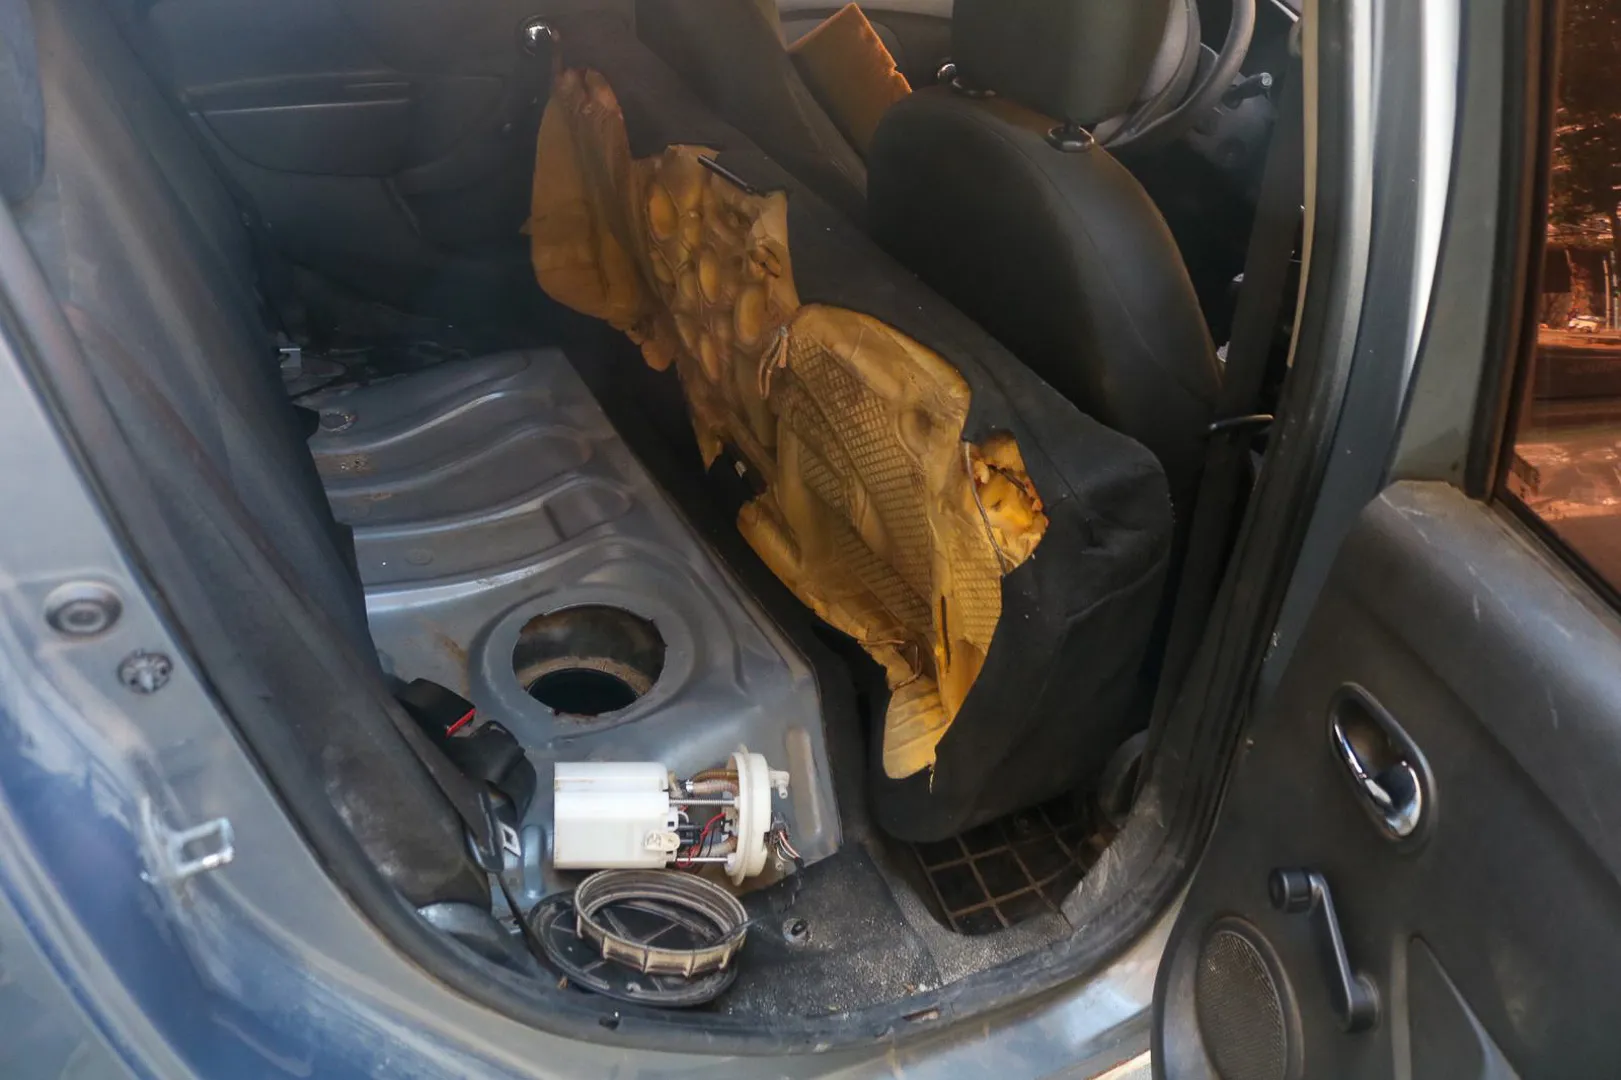 Carga foi encontrada pelos policiais dentro do tanque de combustível do veículo